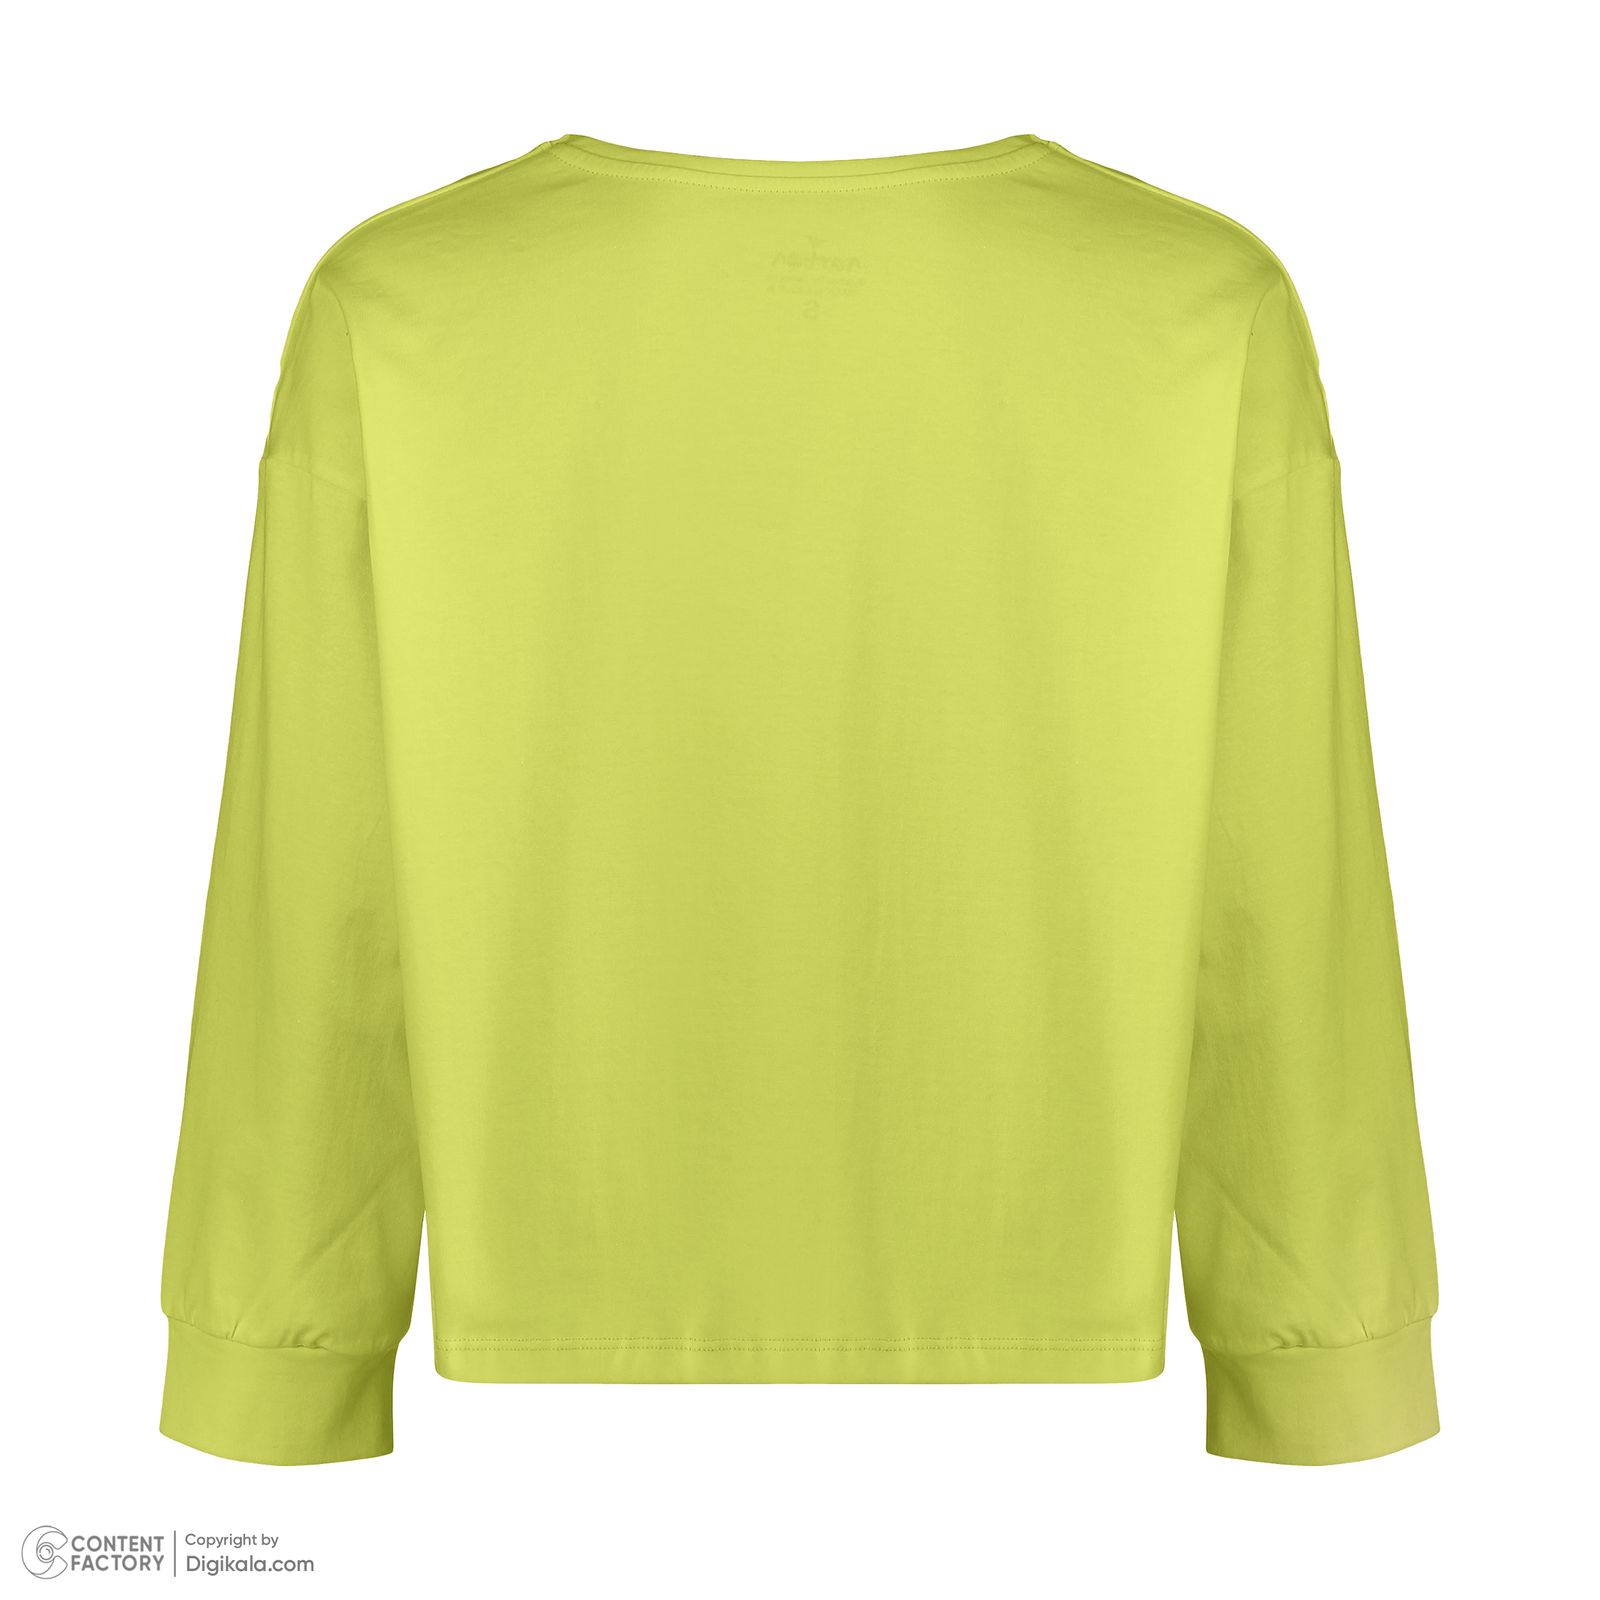 تی شرت آستین بلند زنانه ناربن مدل ترمه کد 3504 رنگ سبز پسته ای -  - 4